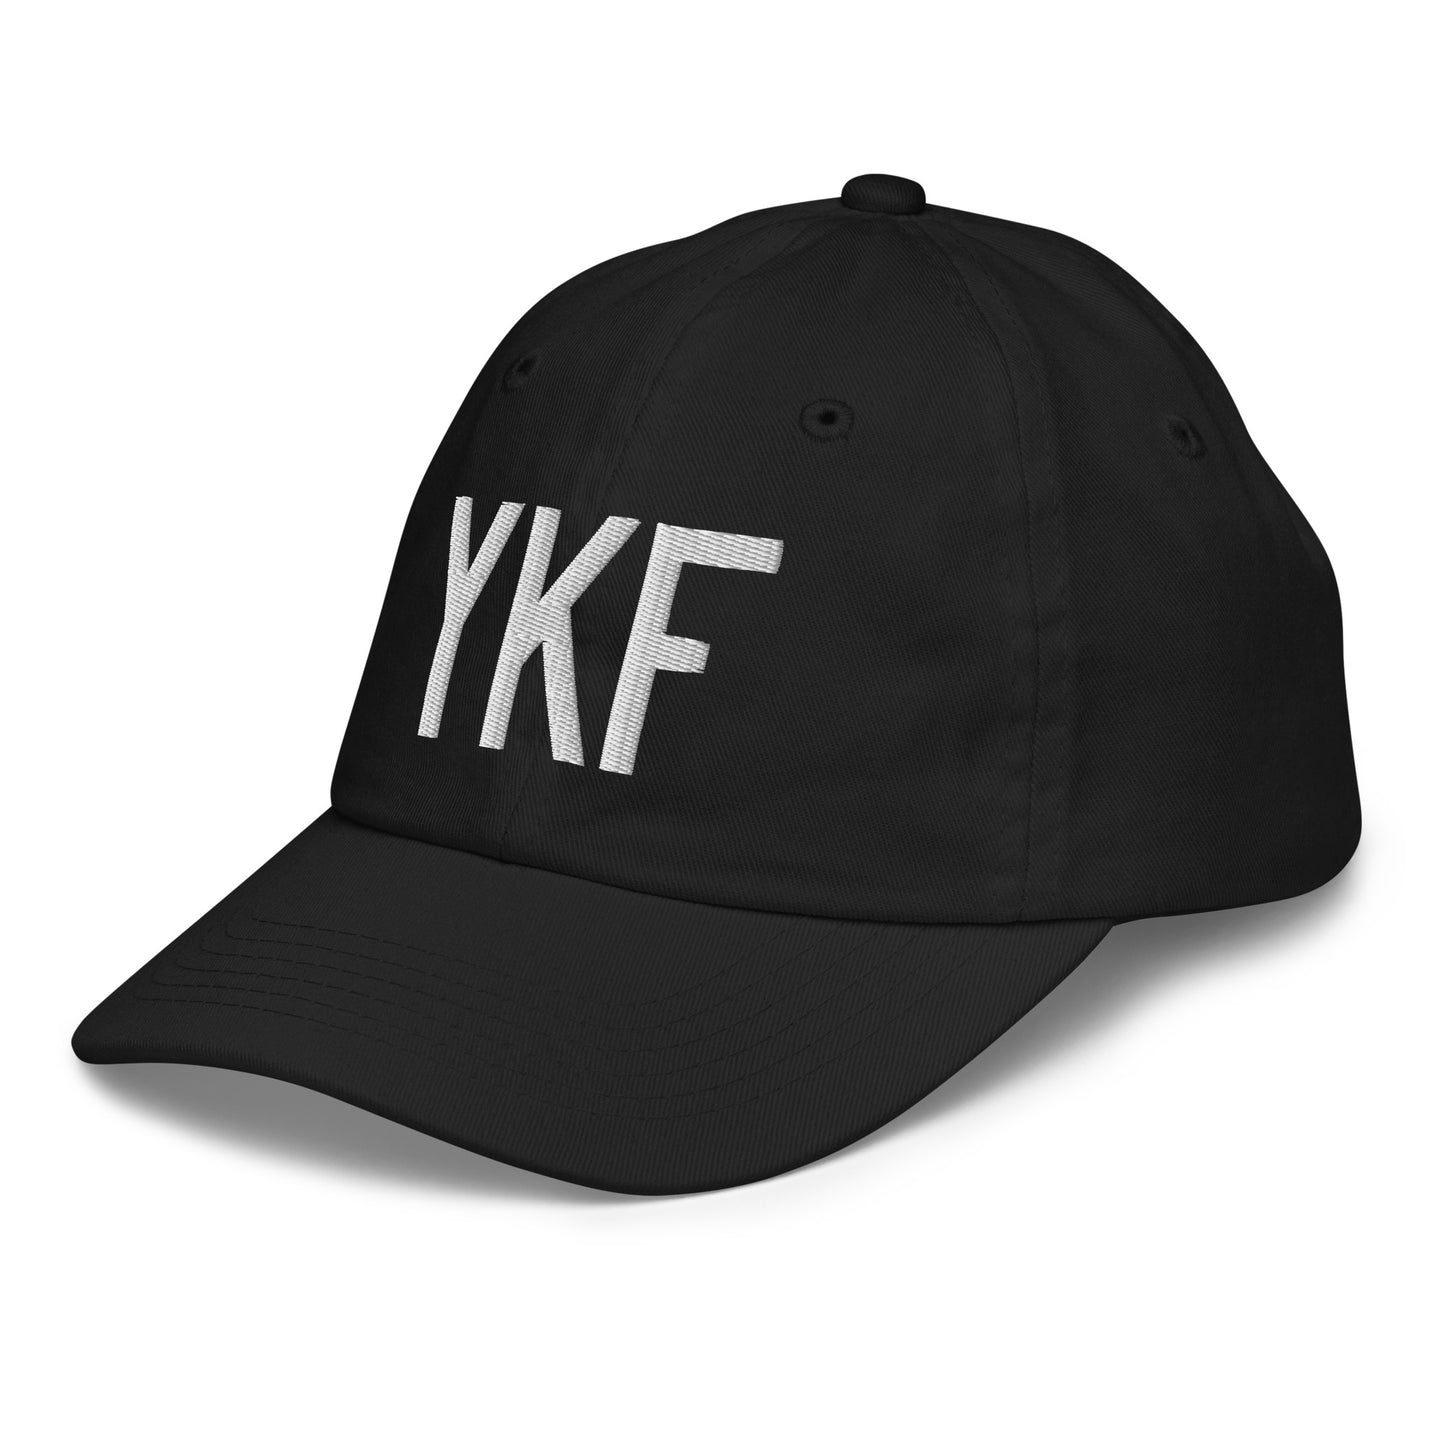 Airport Code Kid's Baseball Cap - White • YKF Waterloo • YHM Designs - Image 13